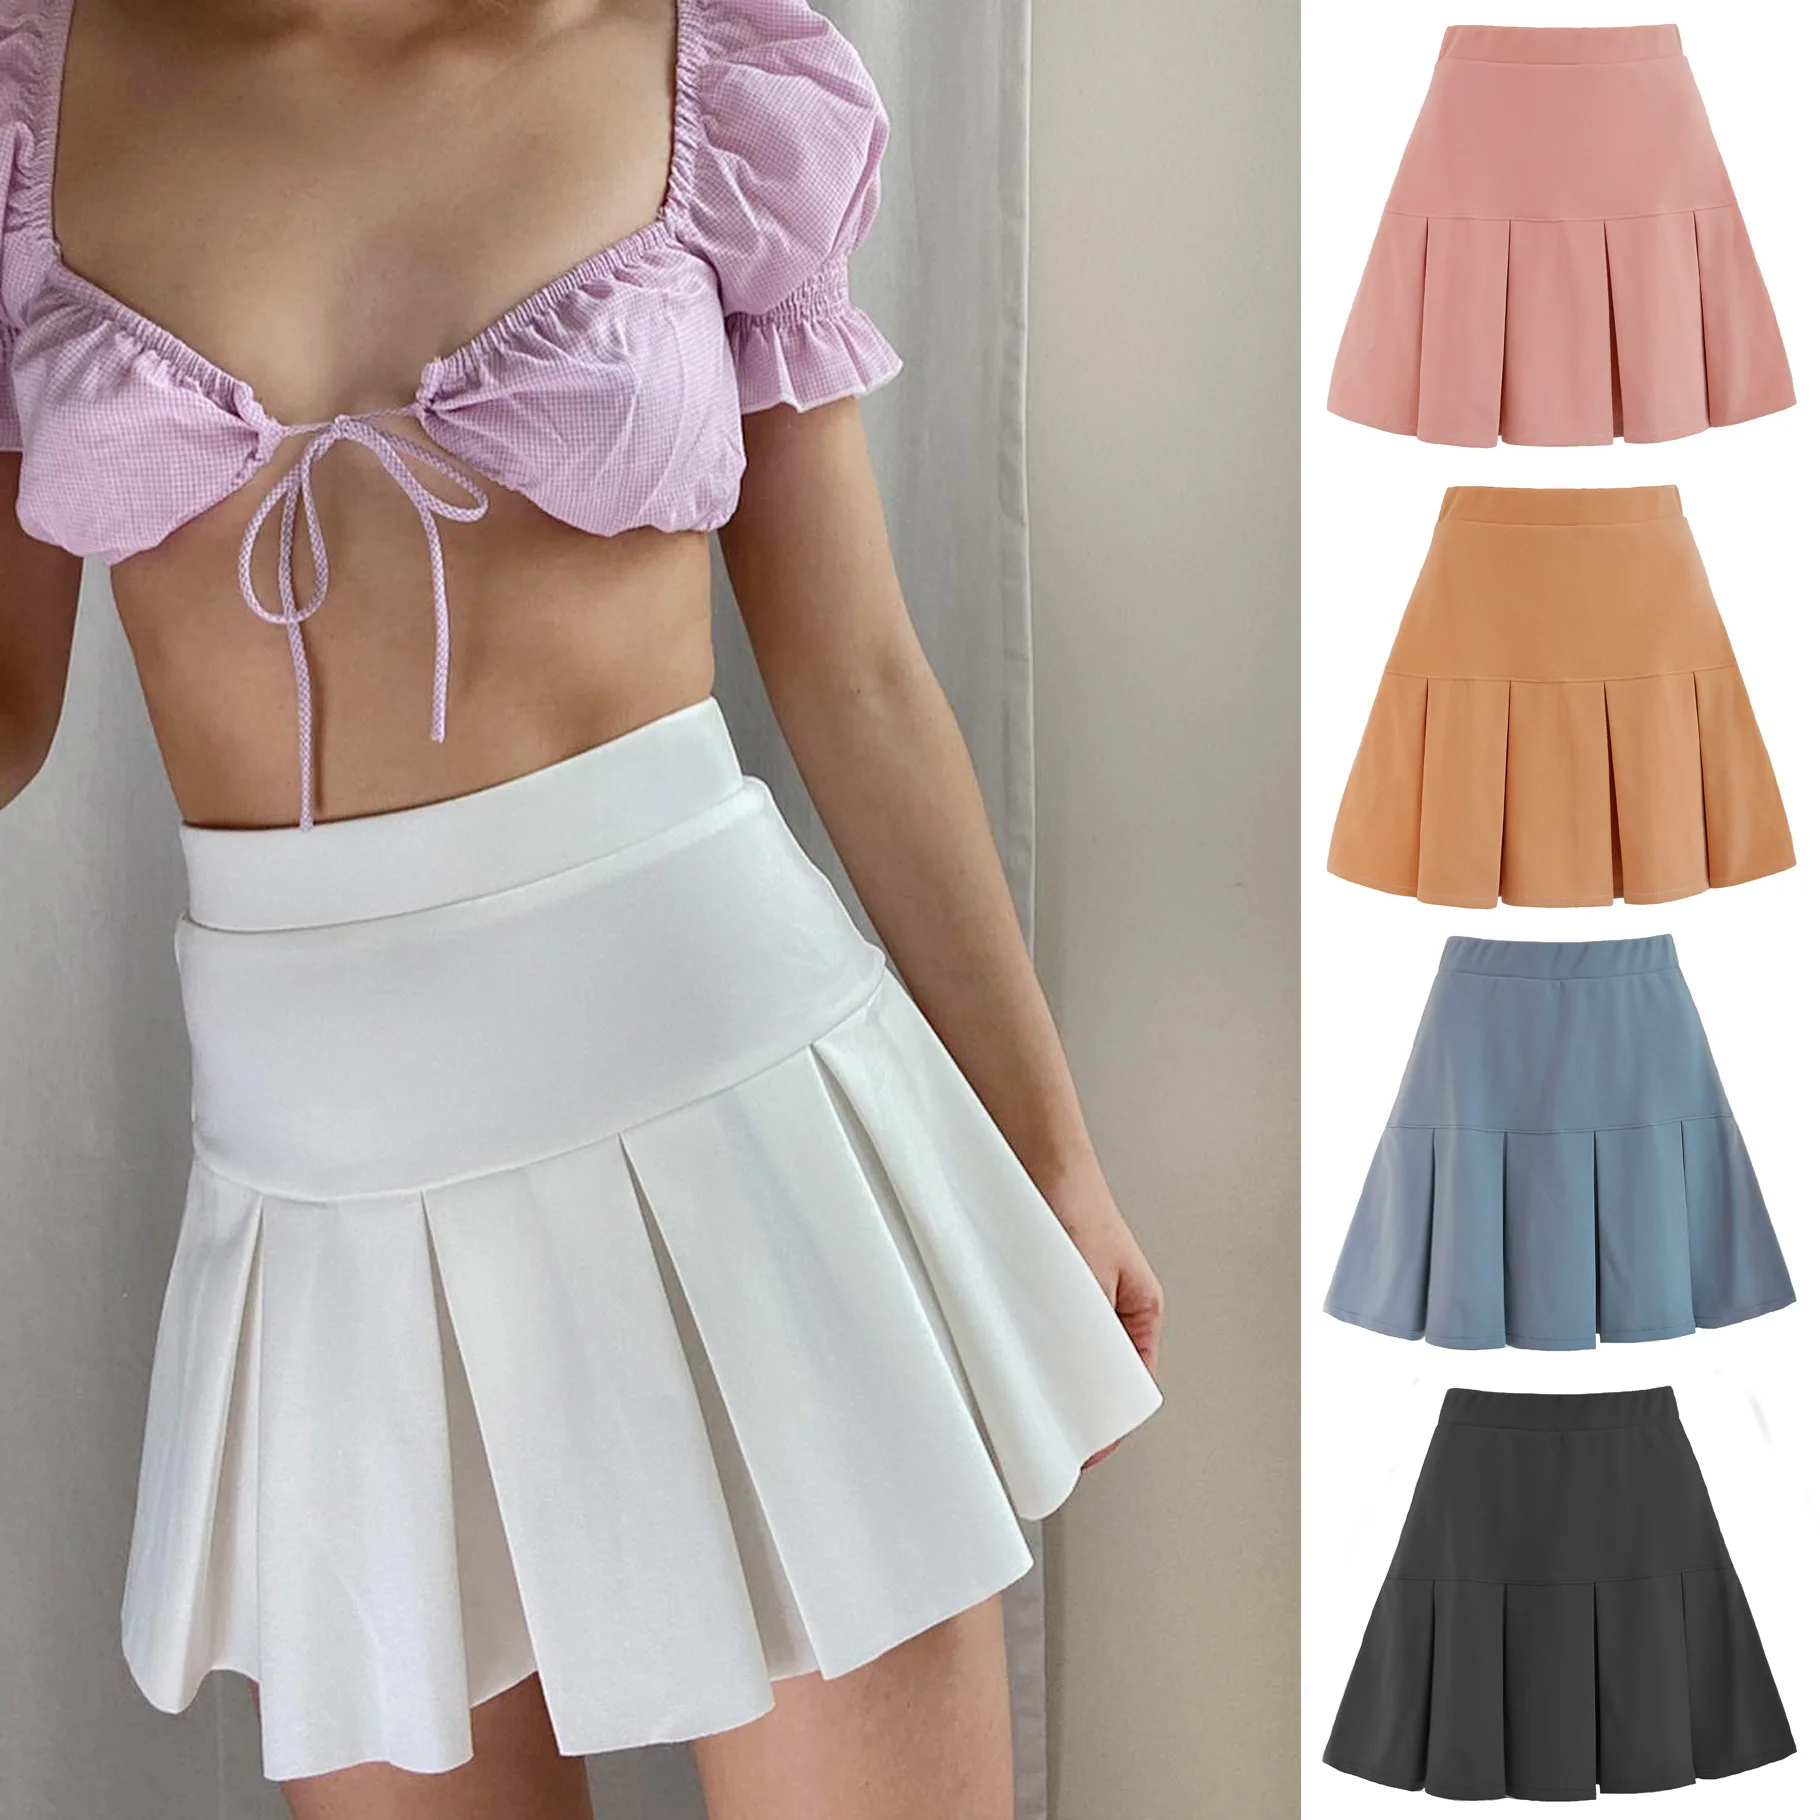 

Pleated High Waist Mini Skirt Women Sexy White Micro Skirt Ladies Korean Style Summer Miniskirt Y2k Egirl Hot Skirt 2020 Skort